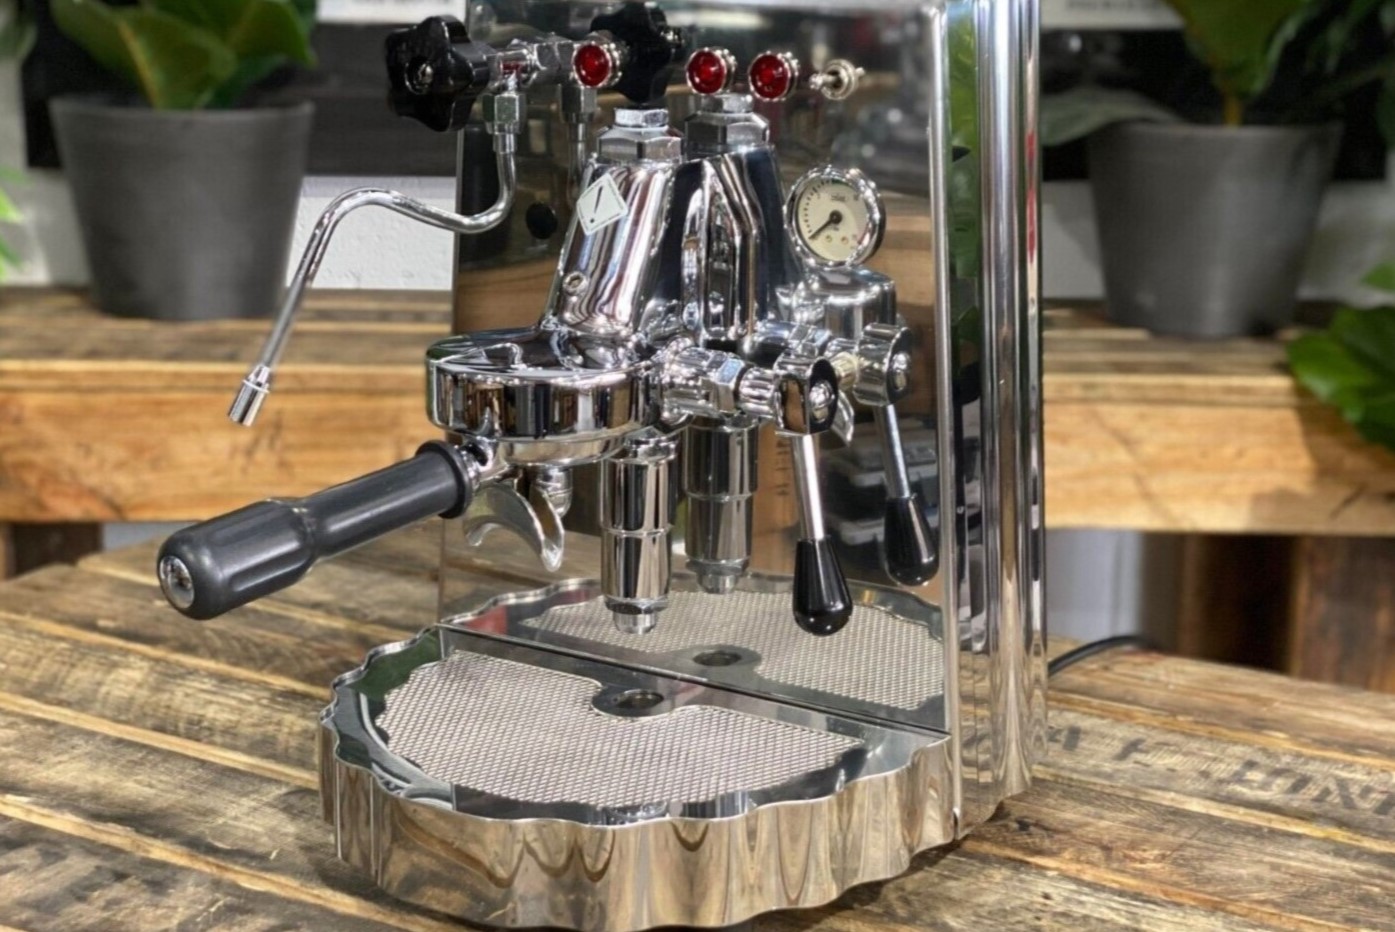 SUMSATY Espresso Machine, Stainless Steel Espresso Machine with